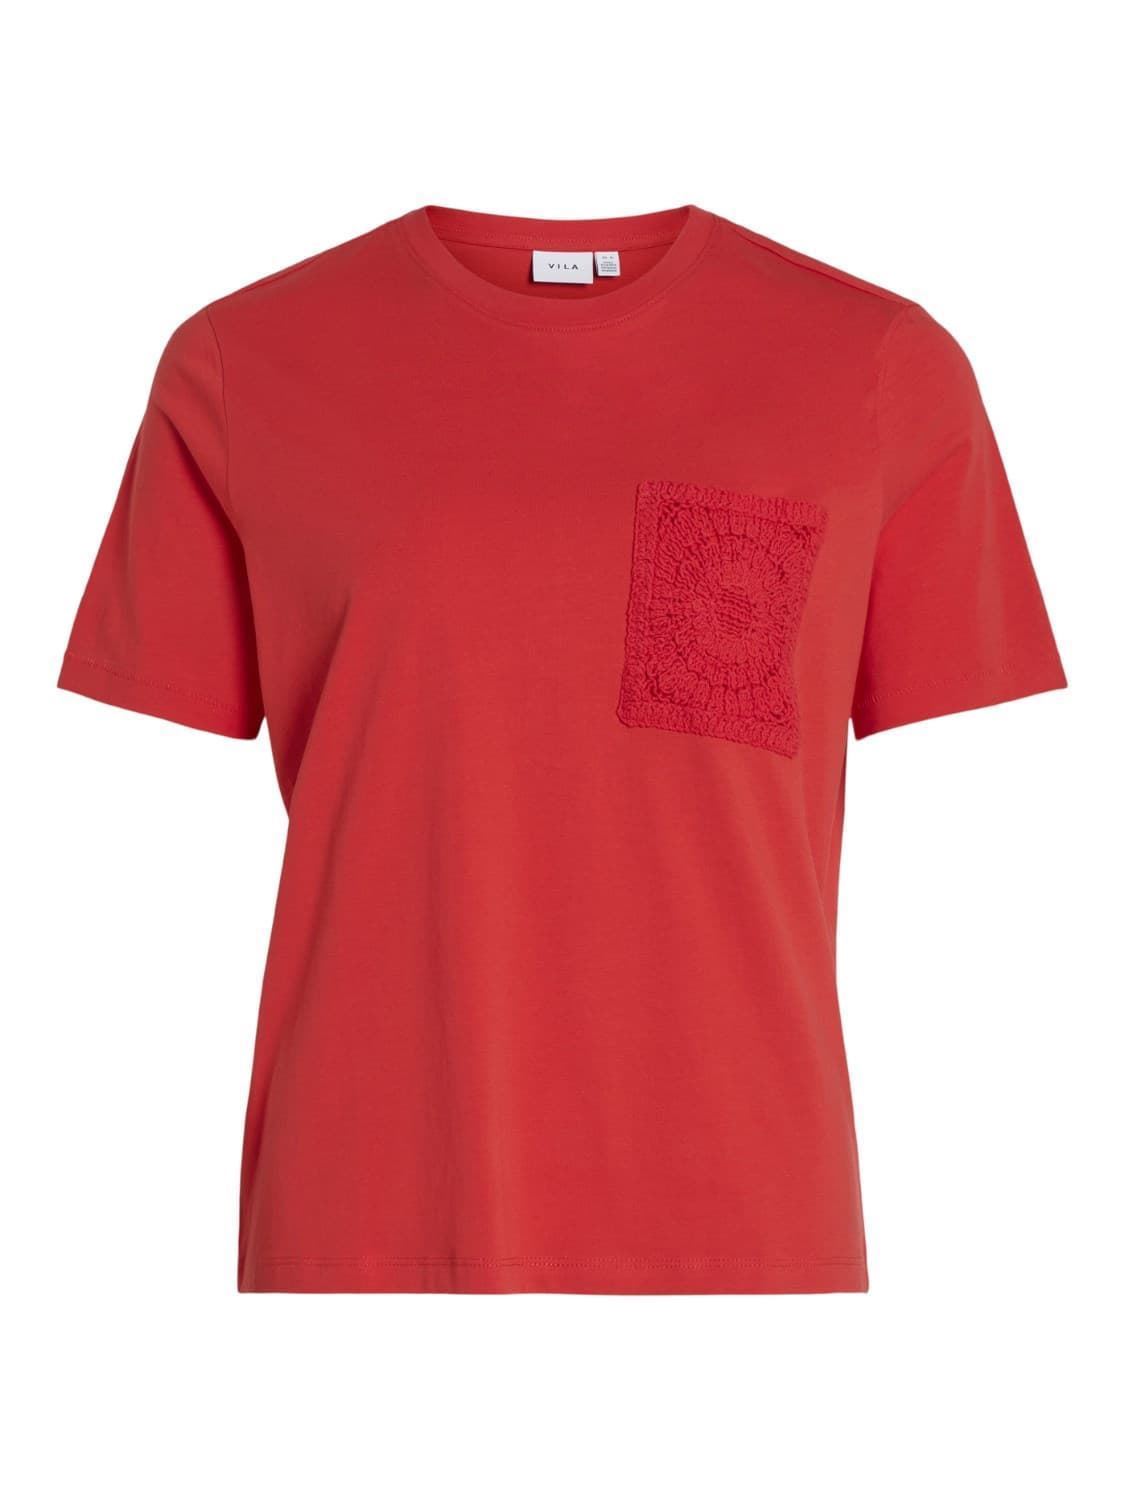 Camiseta crochet visybil rojo - Imagen 4